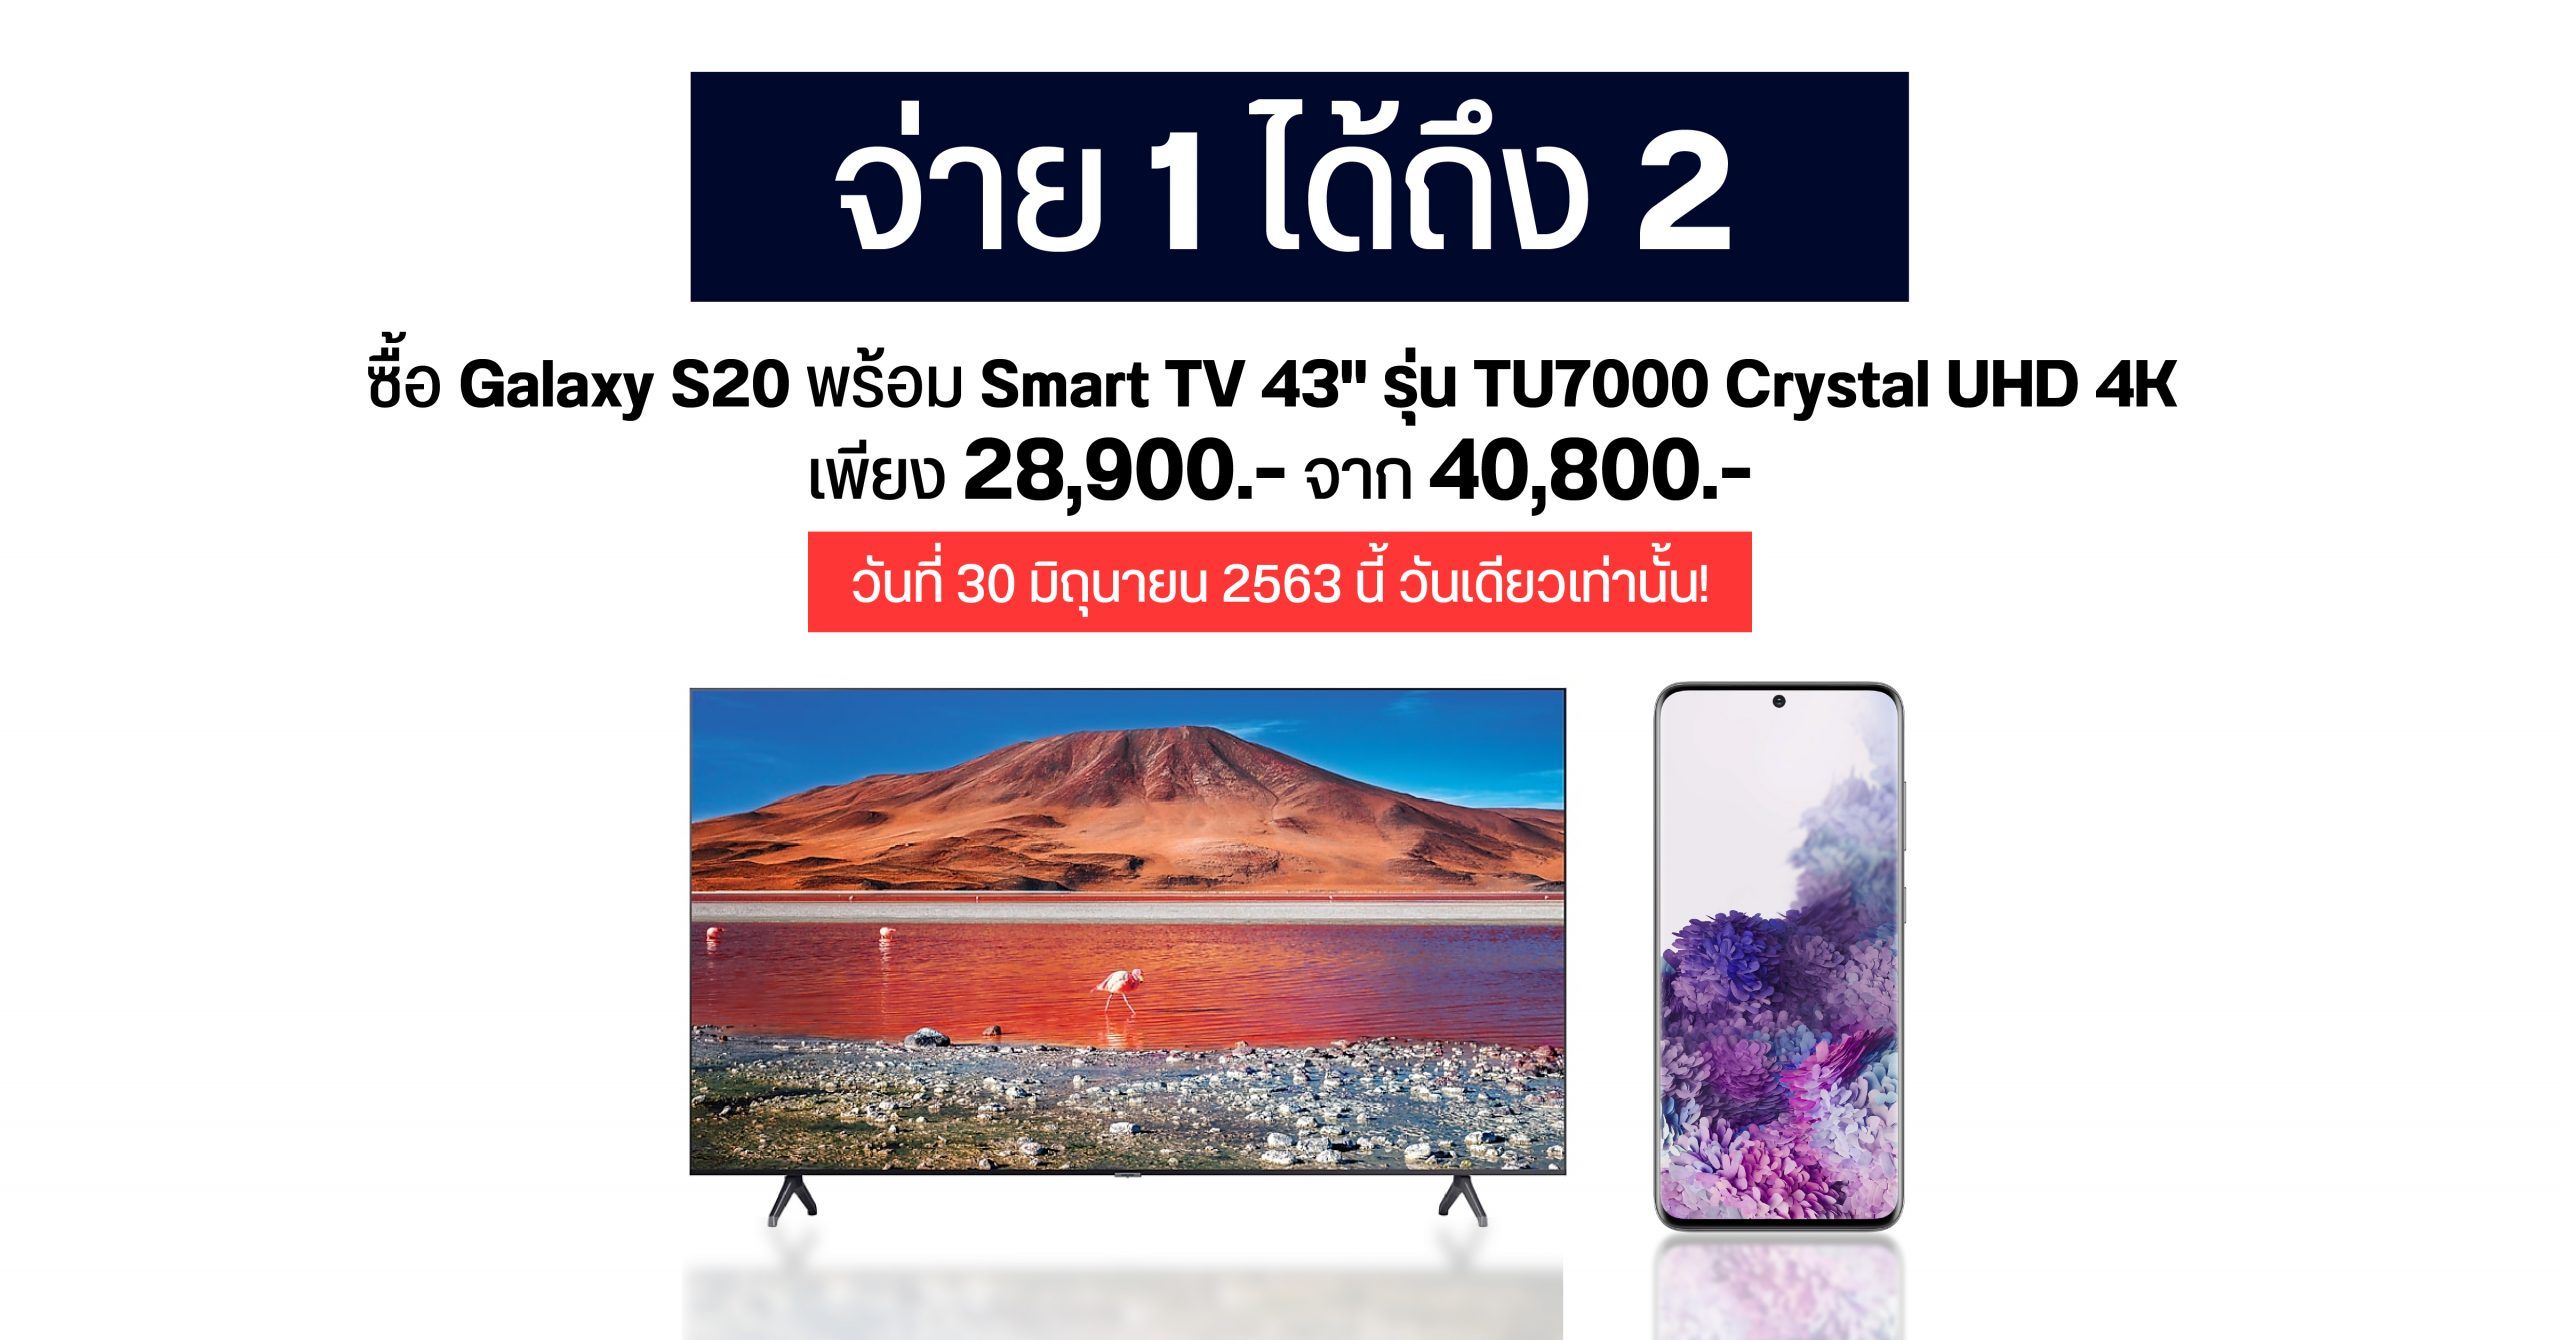 โปรแรงสุดคุ้มวันนี้วันเดียว.. ซื้อ Galaxy S20 ราคา 28,900 บาท แถมฟรี Smart TV จอใหญ่ 43 นิ้ว